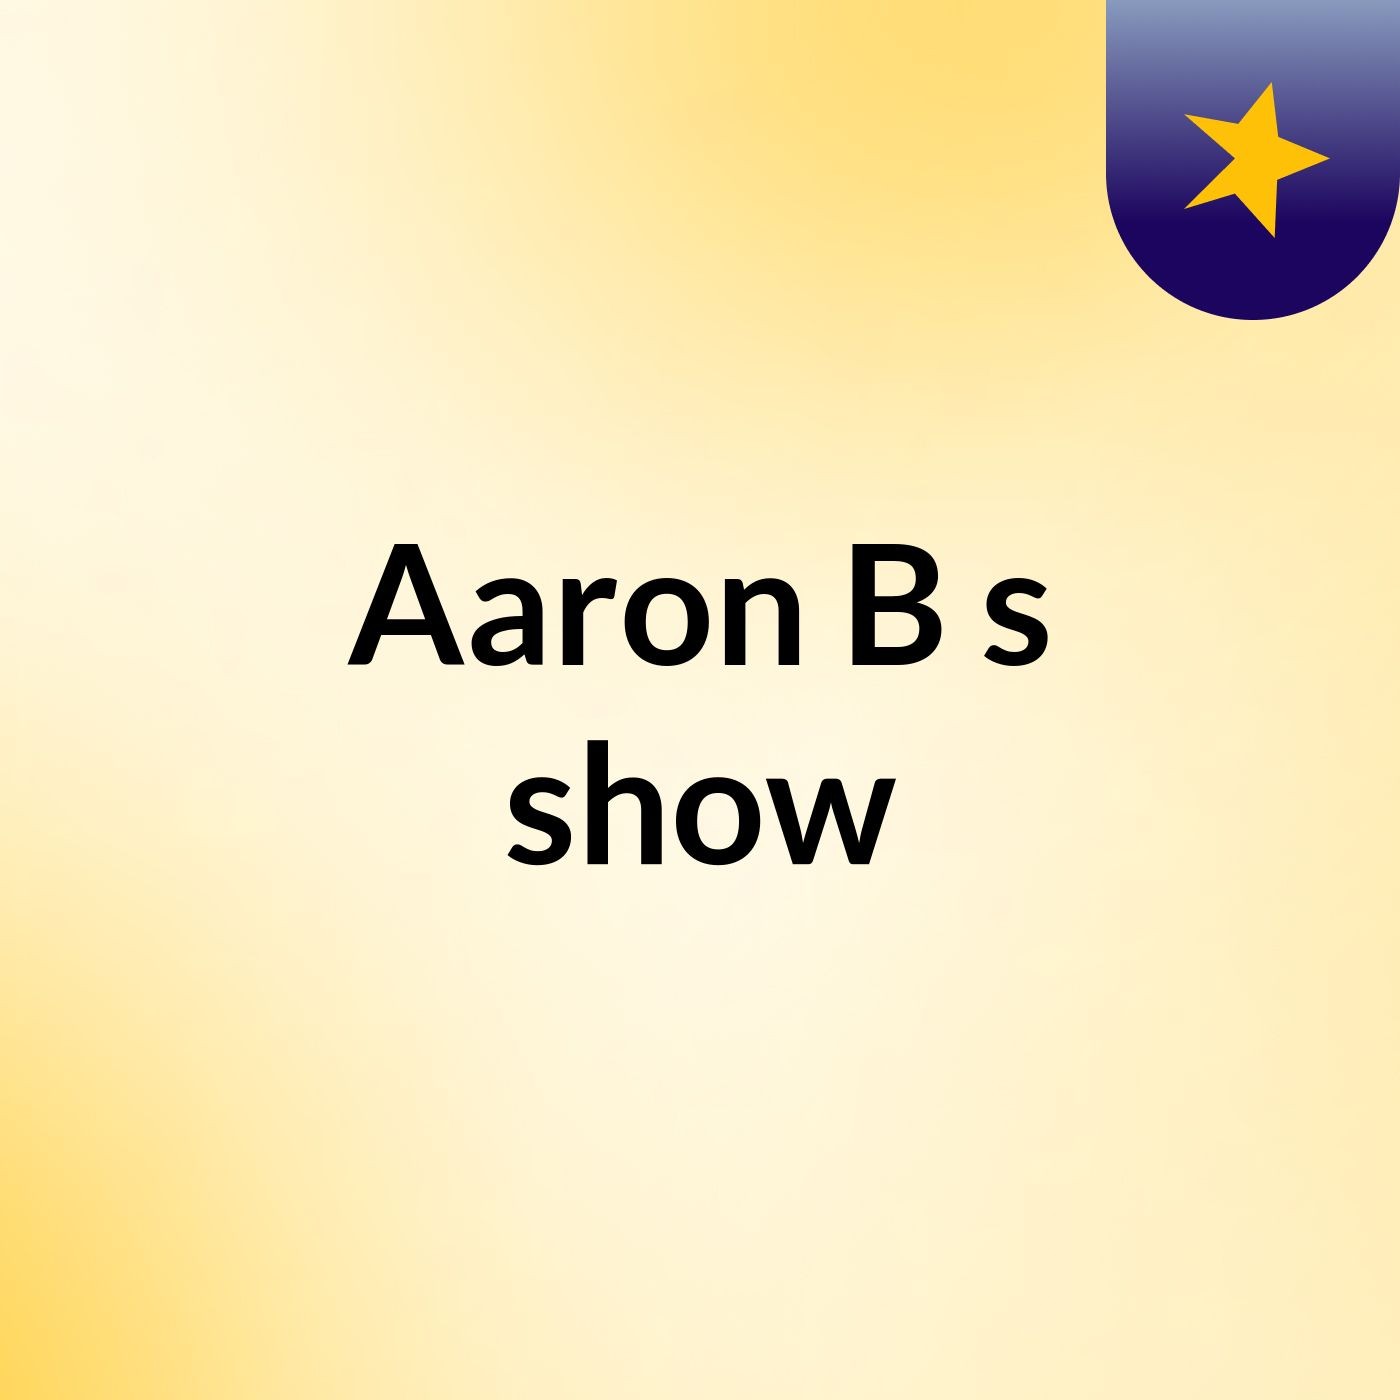 Aaron B's show